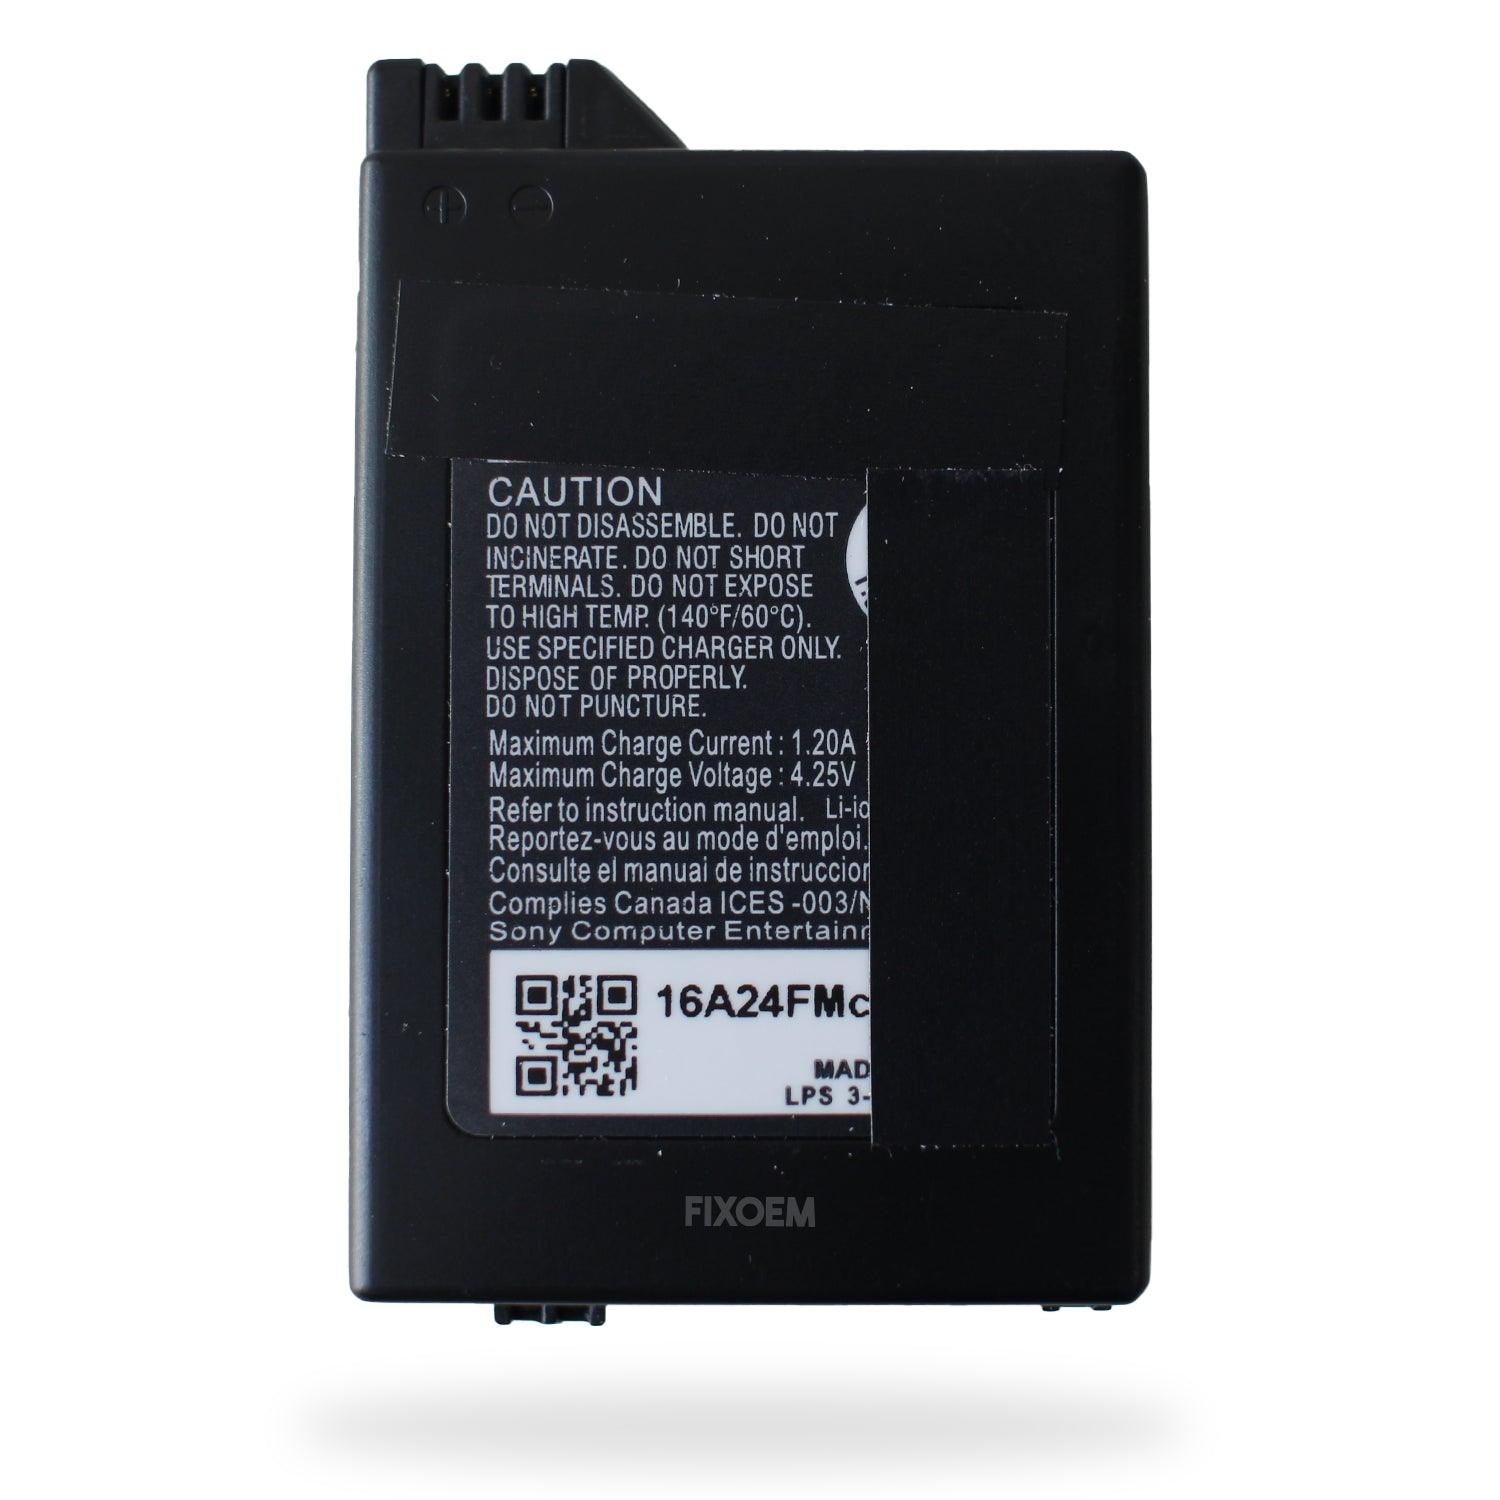 Bateria Sony Psp-s110 a solo $ 220.00 Refaccion y puestos celulares, refurbish y microelectronica.- FixOEM